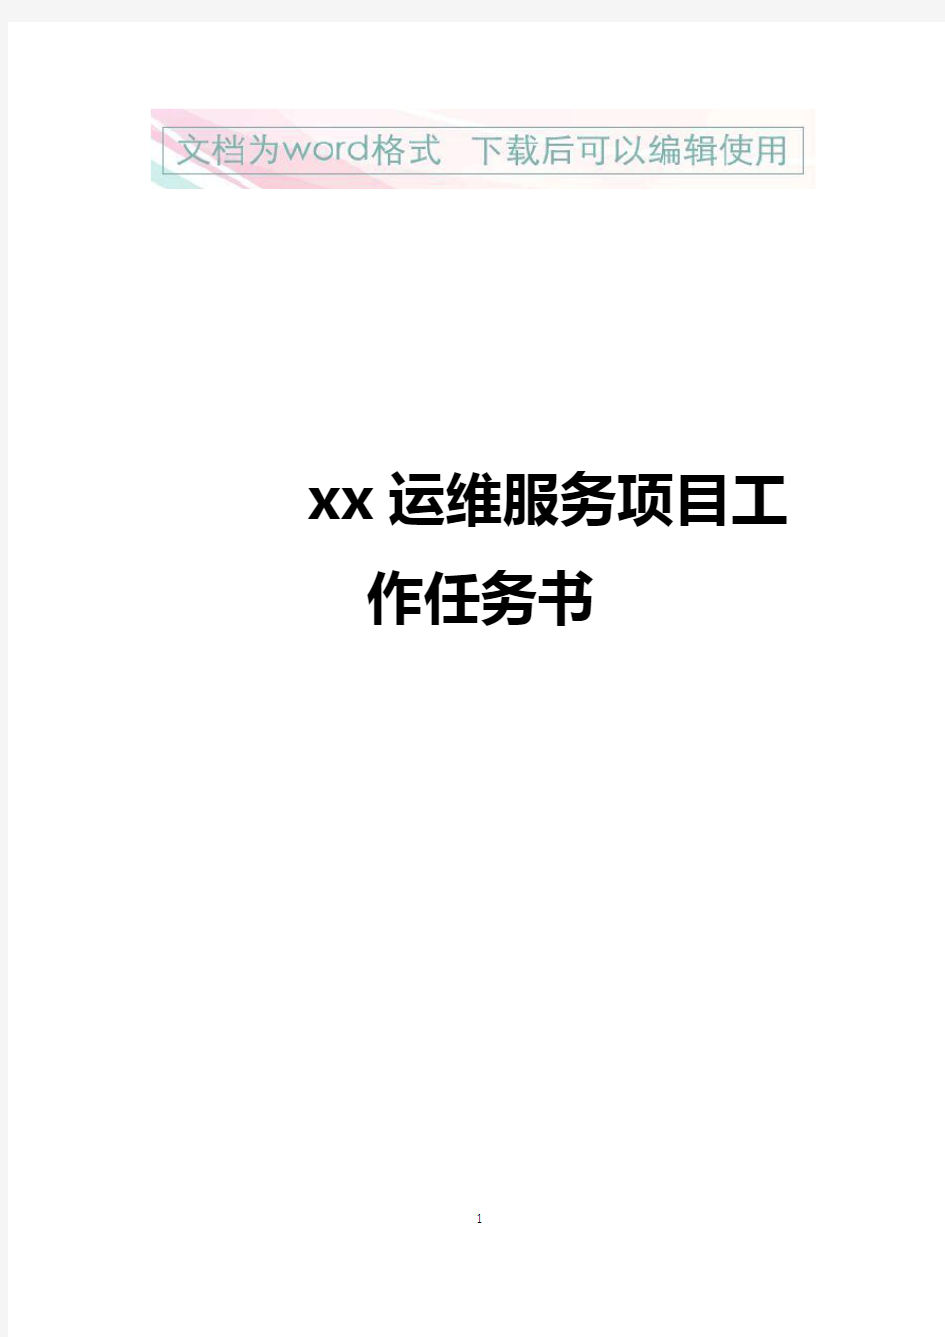 【精品文档】XX运维项目执行解决方案书